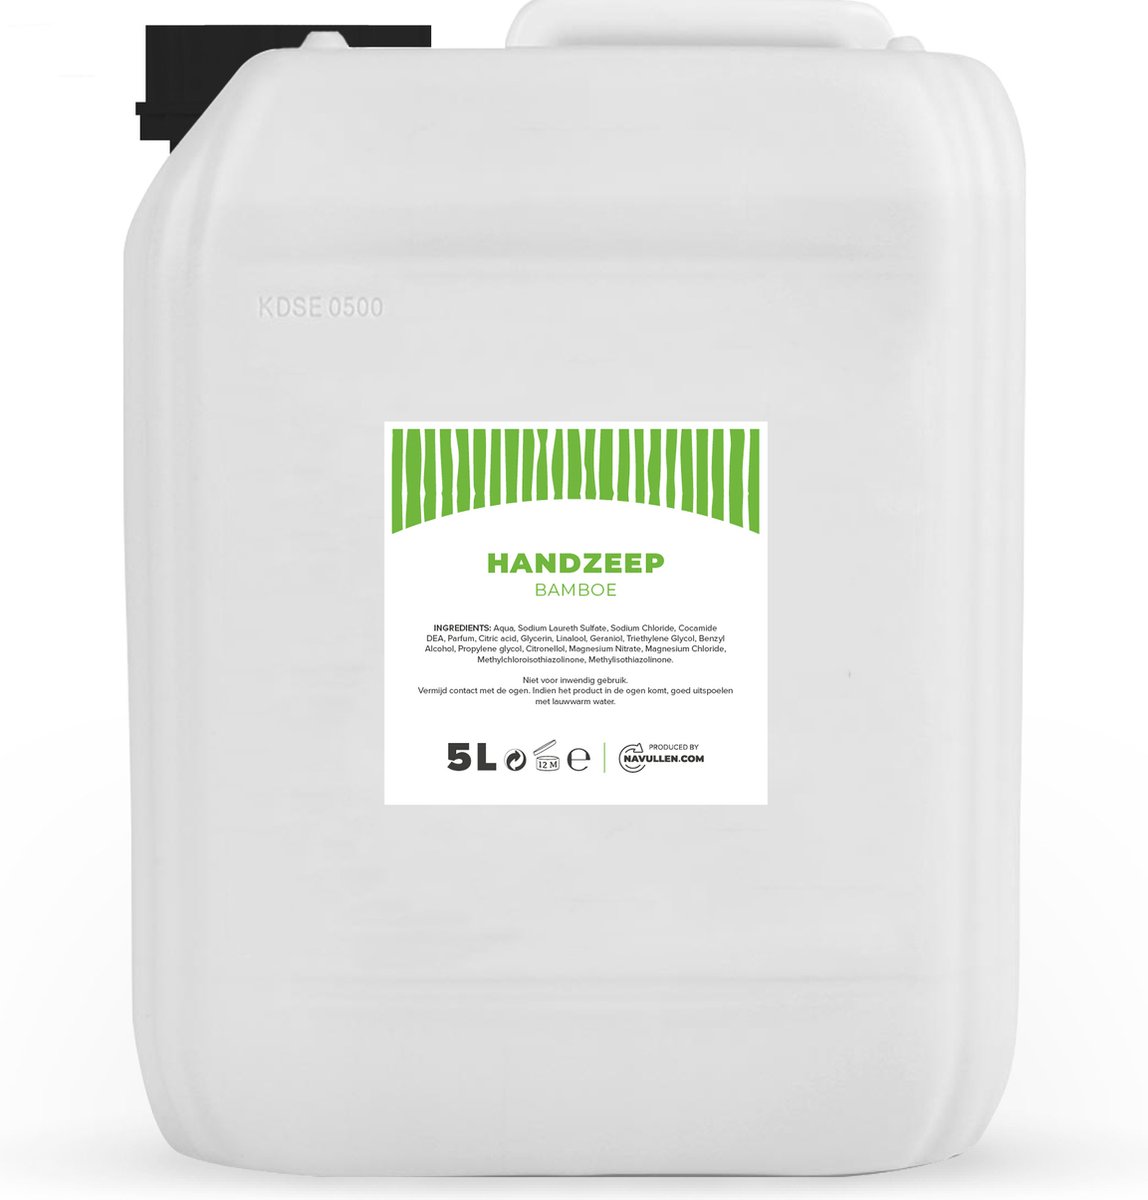 Handzeep - Bamboe - 5 Liter - Jerrycan - Navulling - Navullen